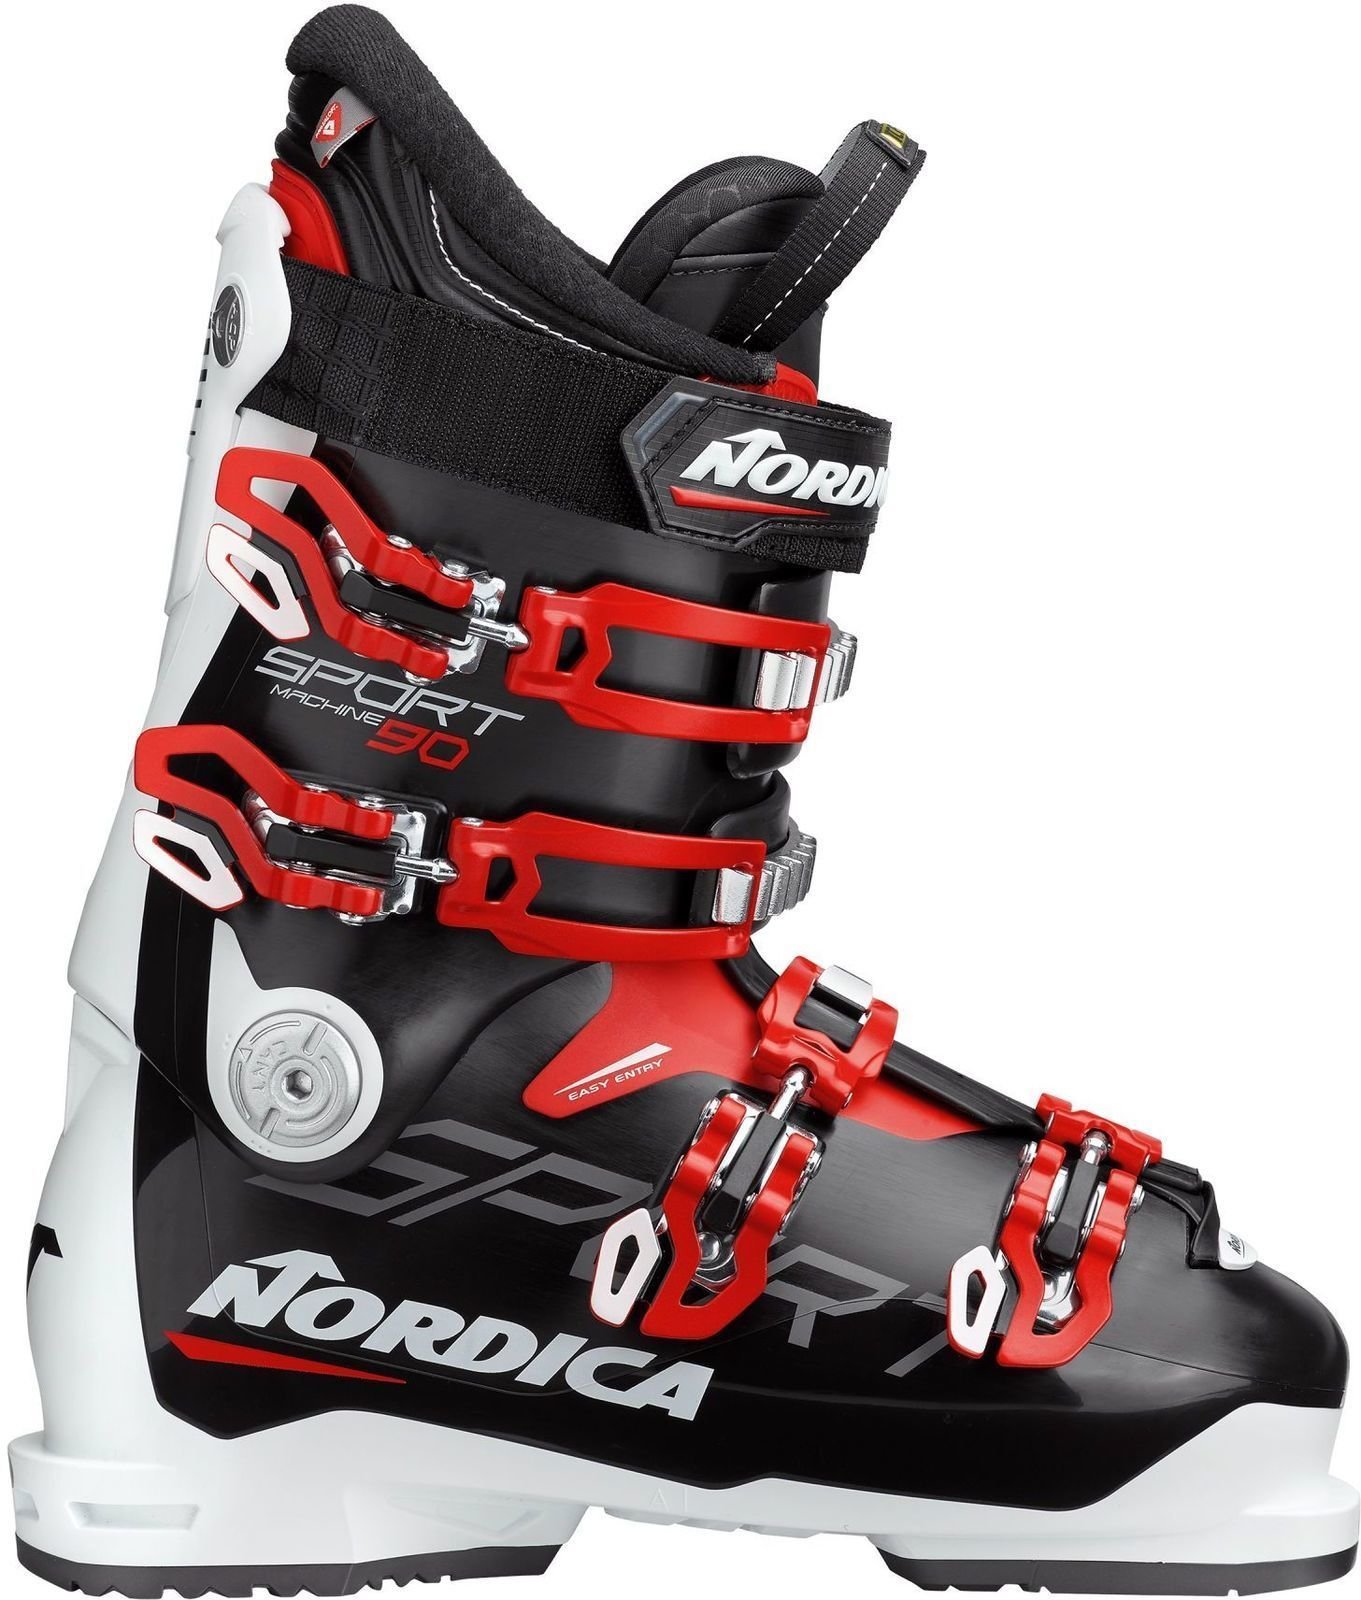 Μπότες Σκι Alpine Nordica Sportmachine Black/White/Red 270 Μπότες Σκι Alpine